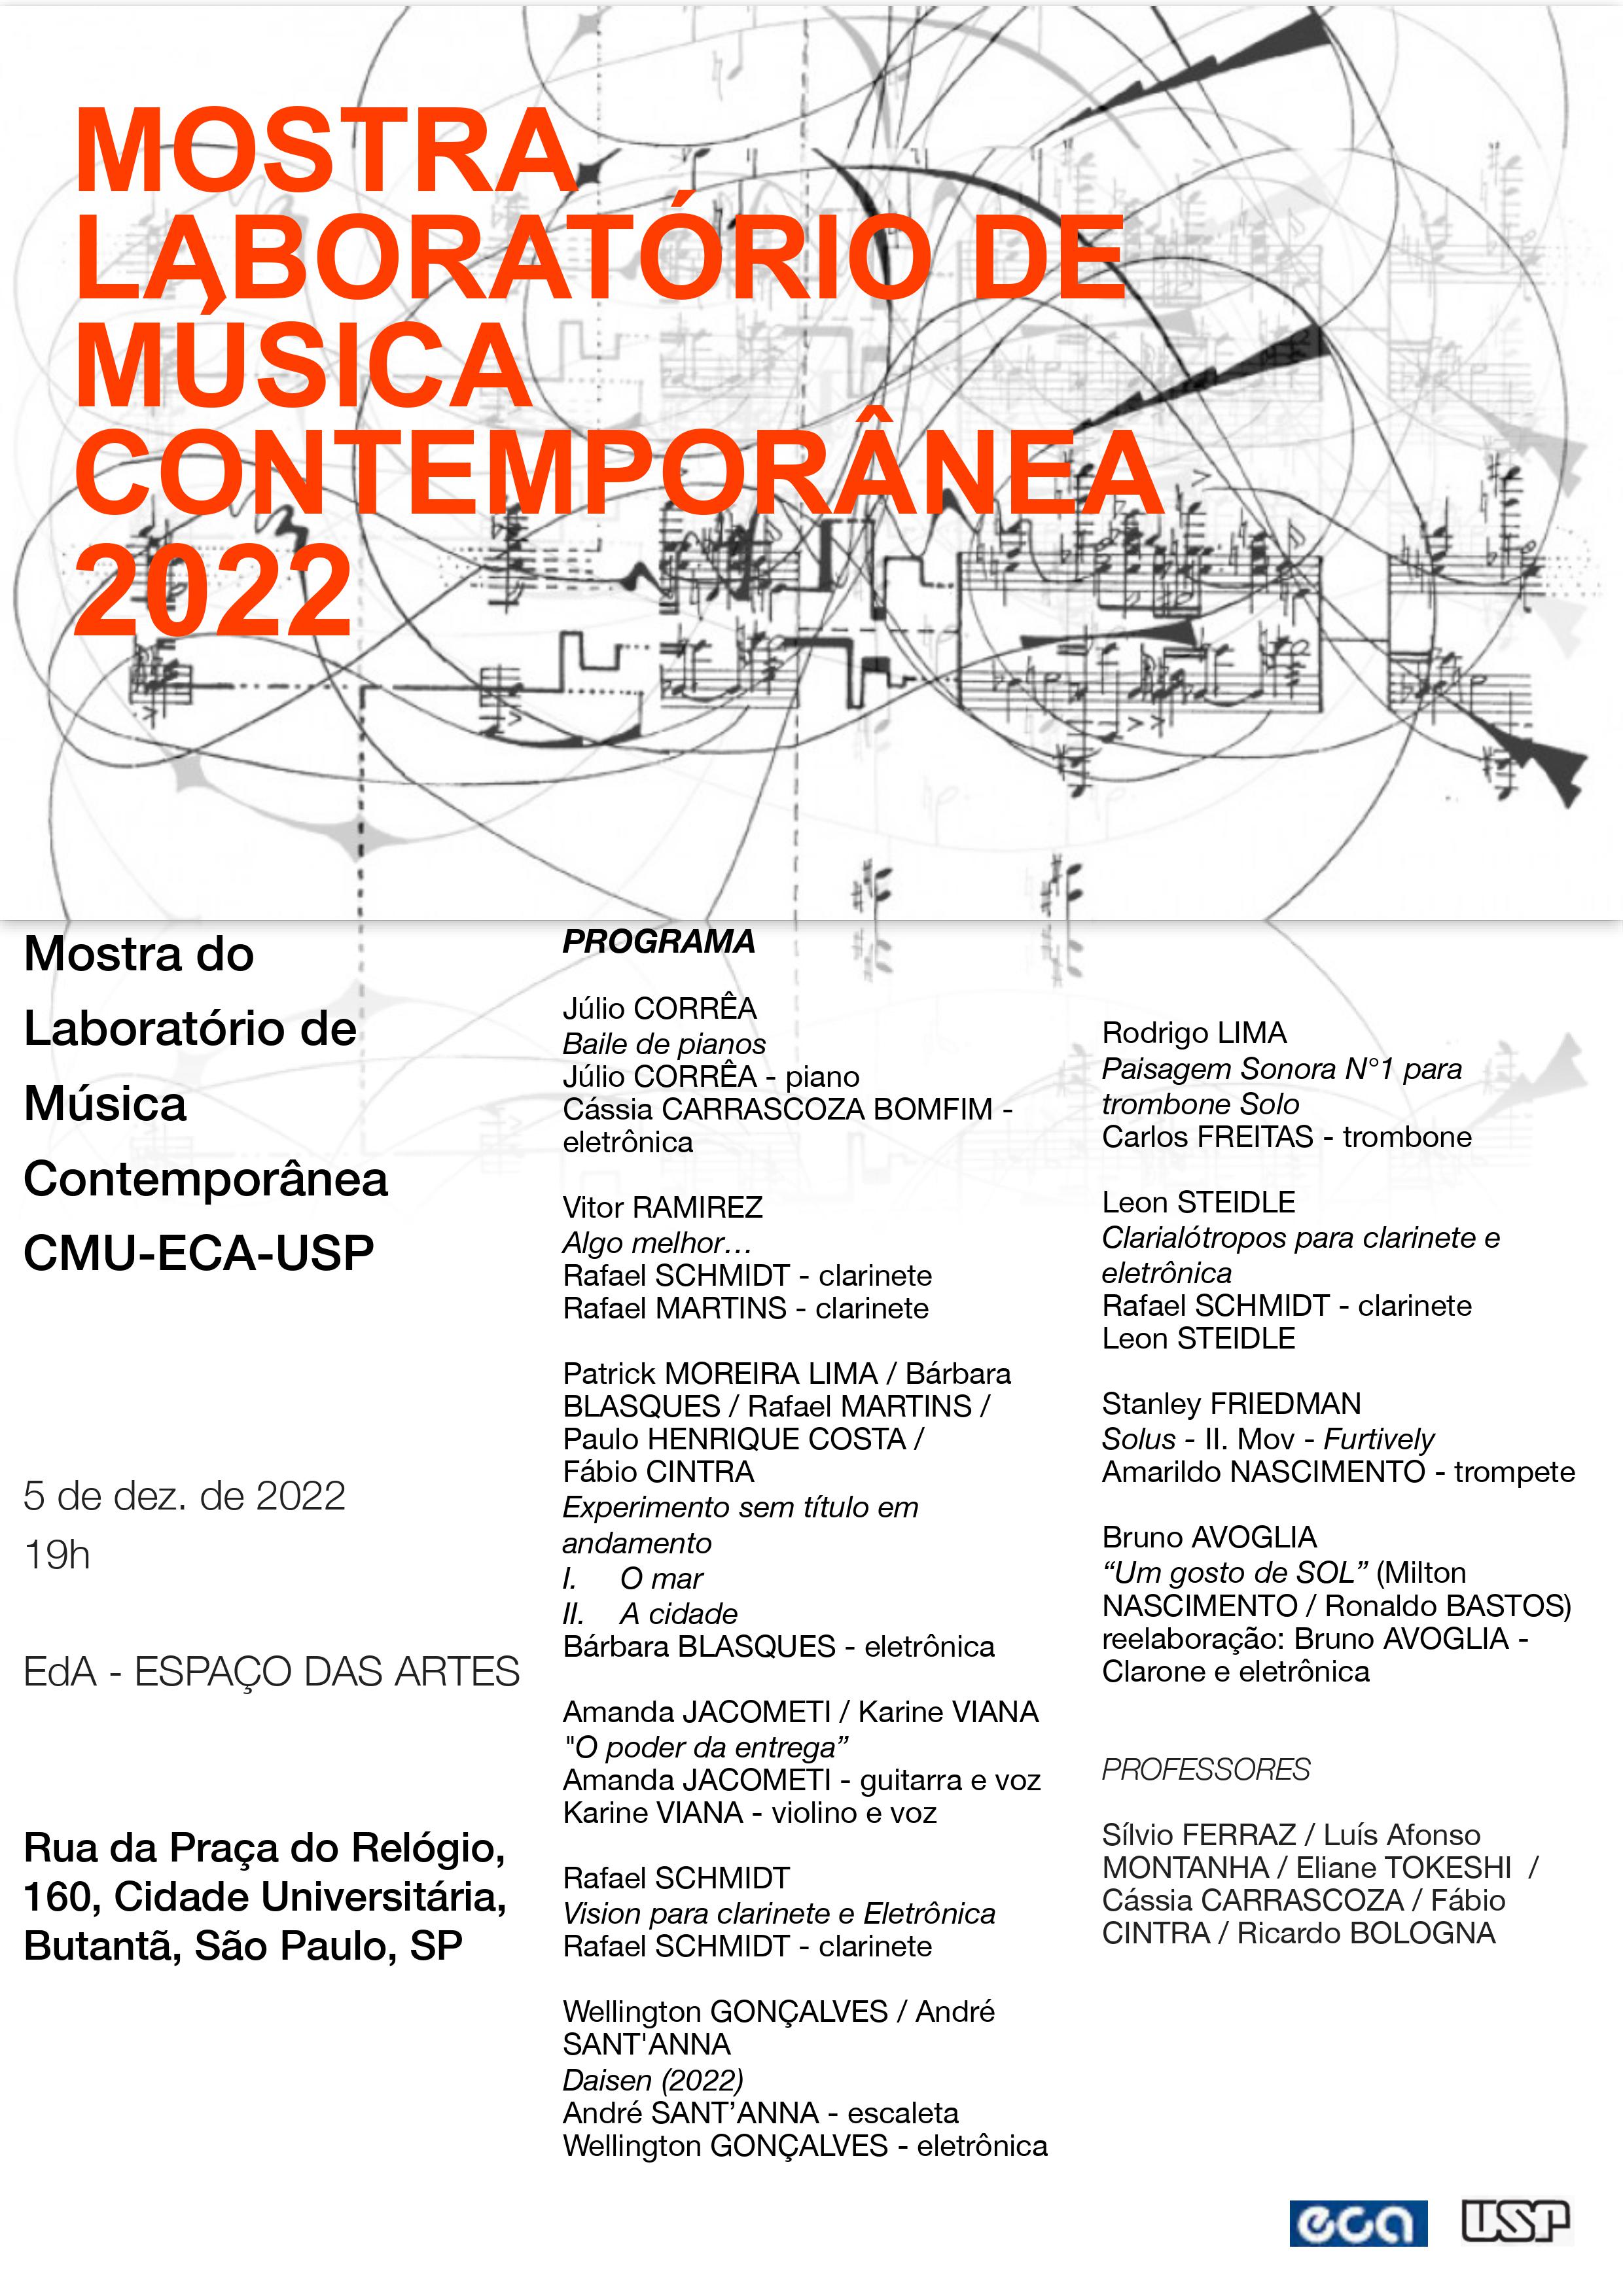 Mostra Laboratório de Música Contemporânea 2022